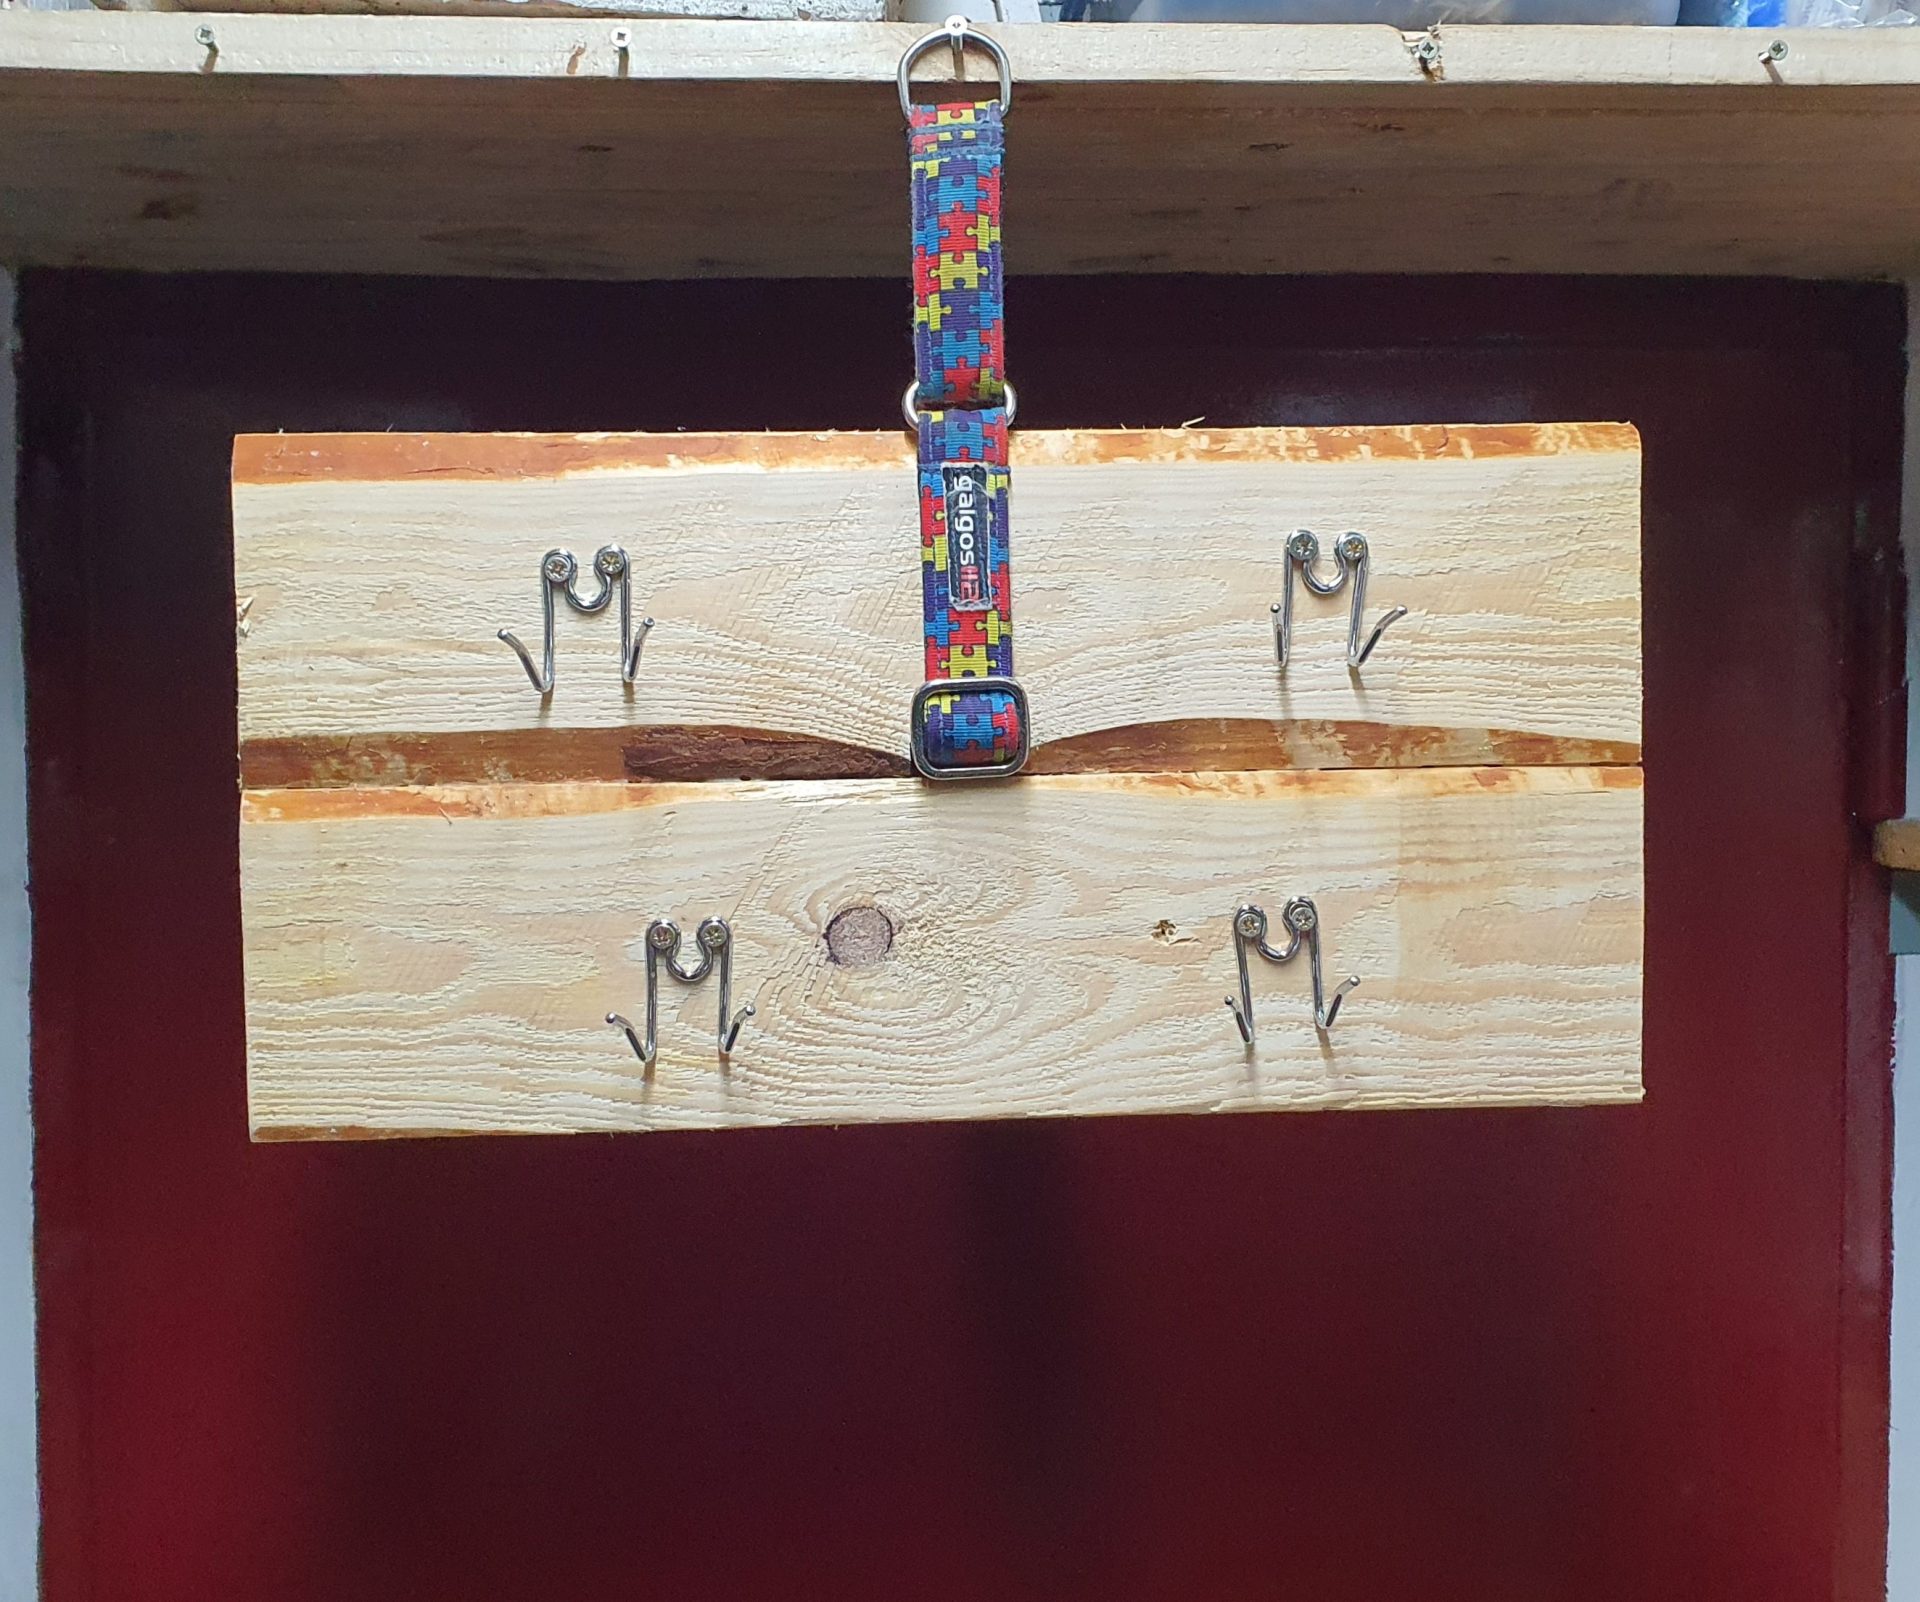 Percha de madera, se cuelga de un collar martingale colocado entre las dos tablas y tiene 4 eslabones de collar de púas para colgar cosas